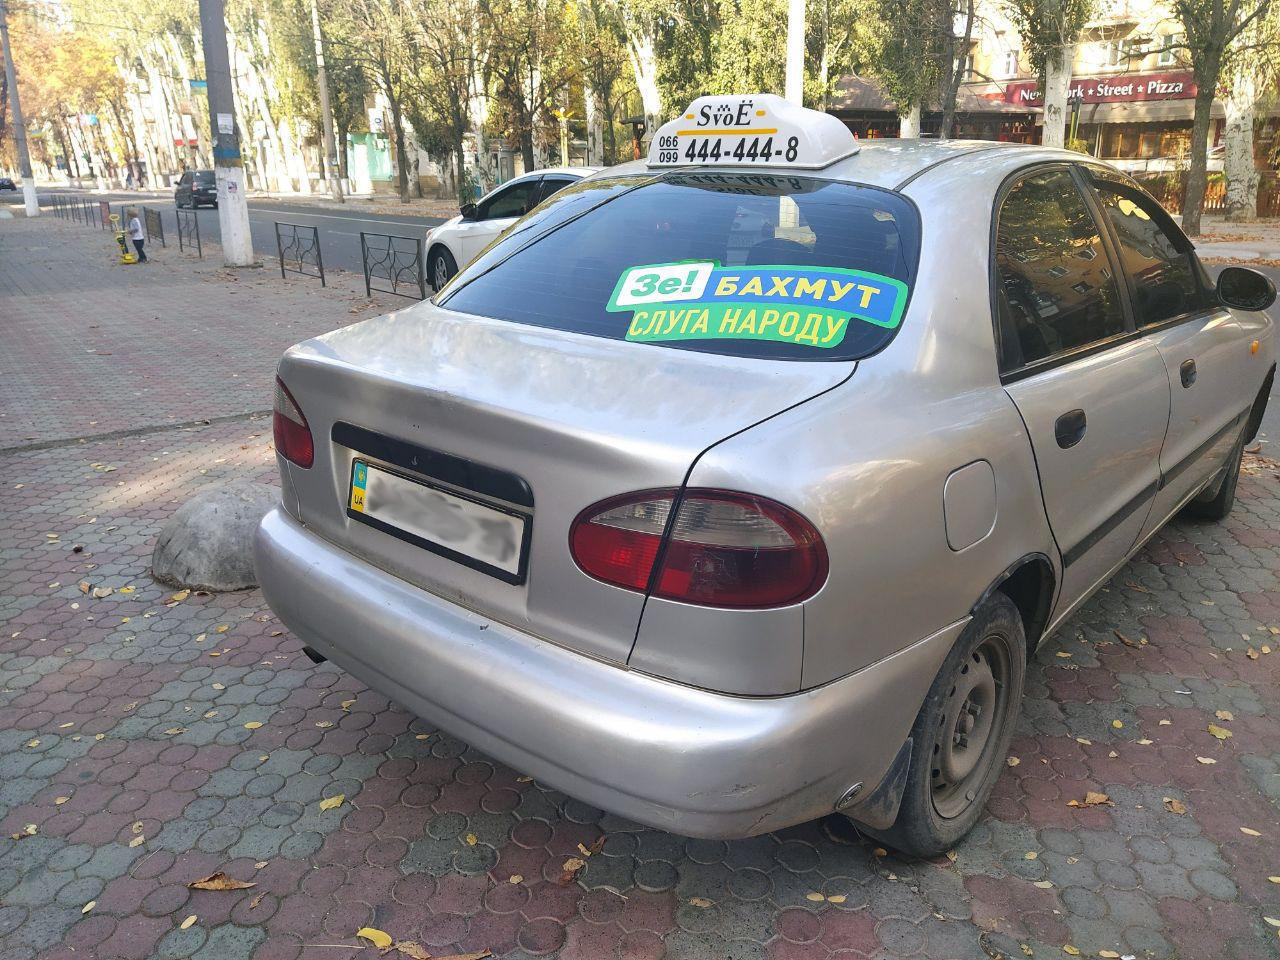 3 служби таксі Бахмута агітують за кандидатів та партії. Це заборонено законом